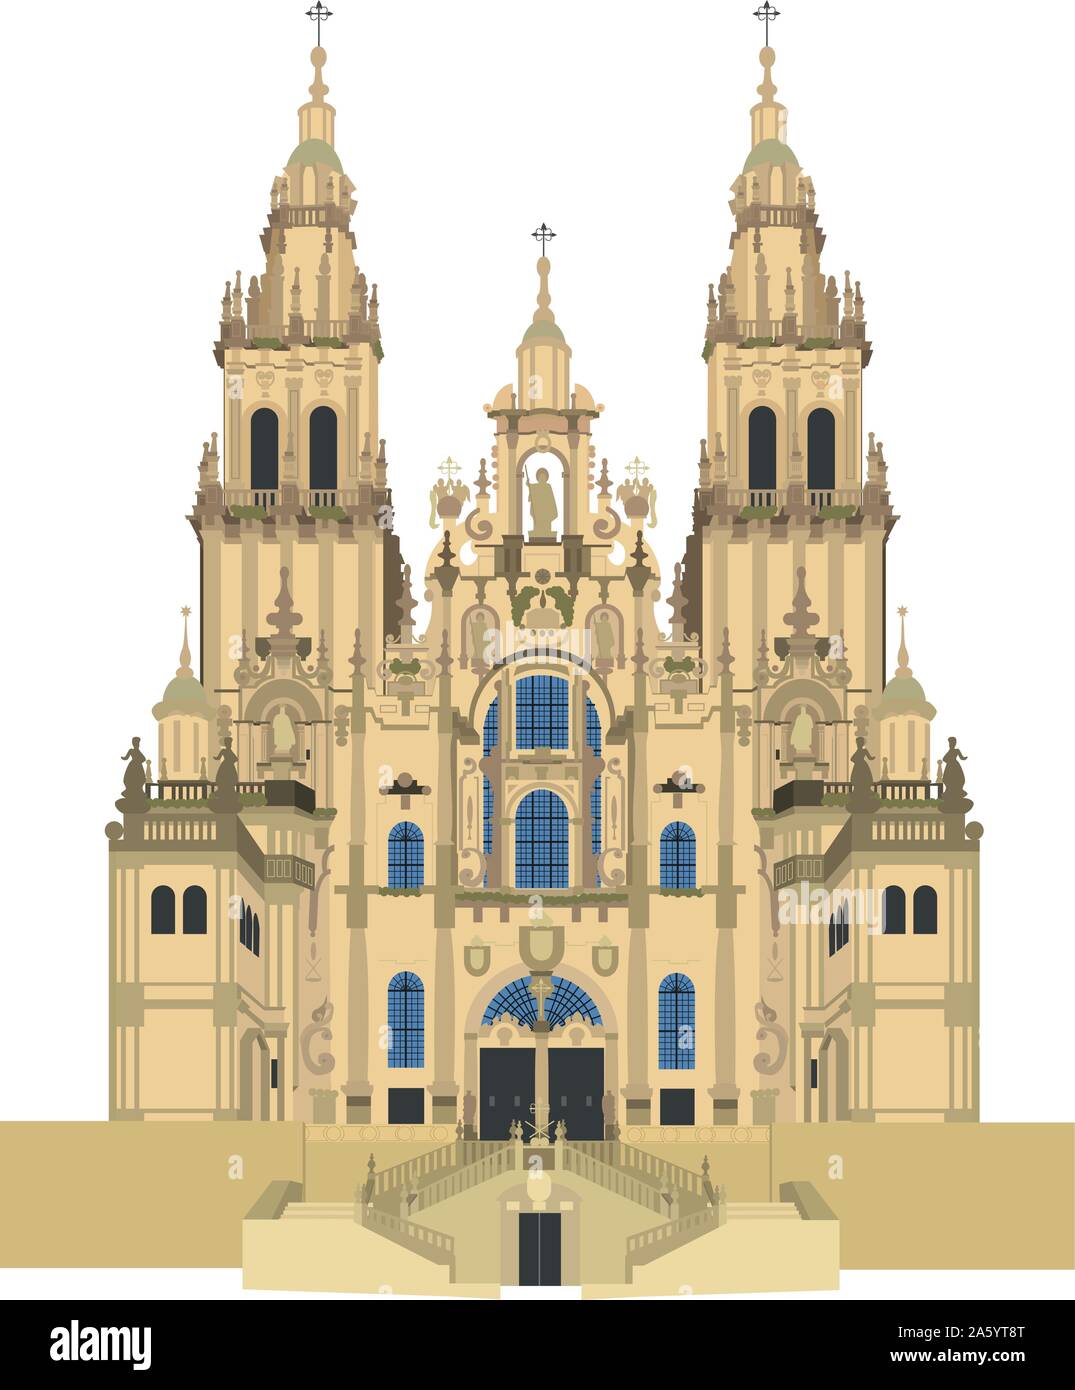 Cathédrale de Santiago de Compostela, Espagne. Isolé sur fond blanc vector illustration. Illustration de Vecteur